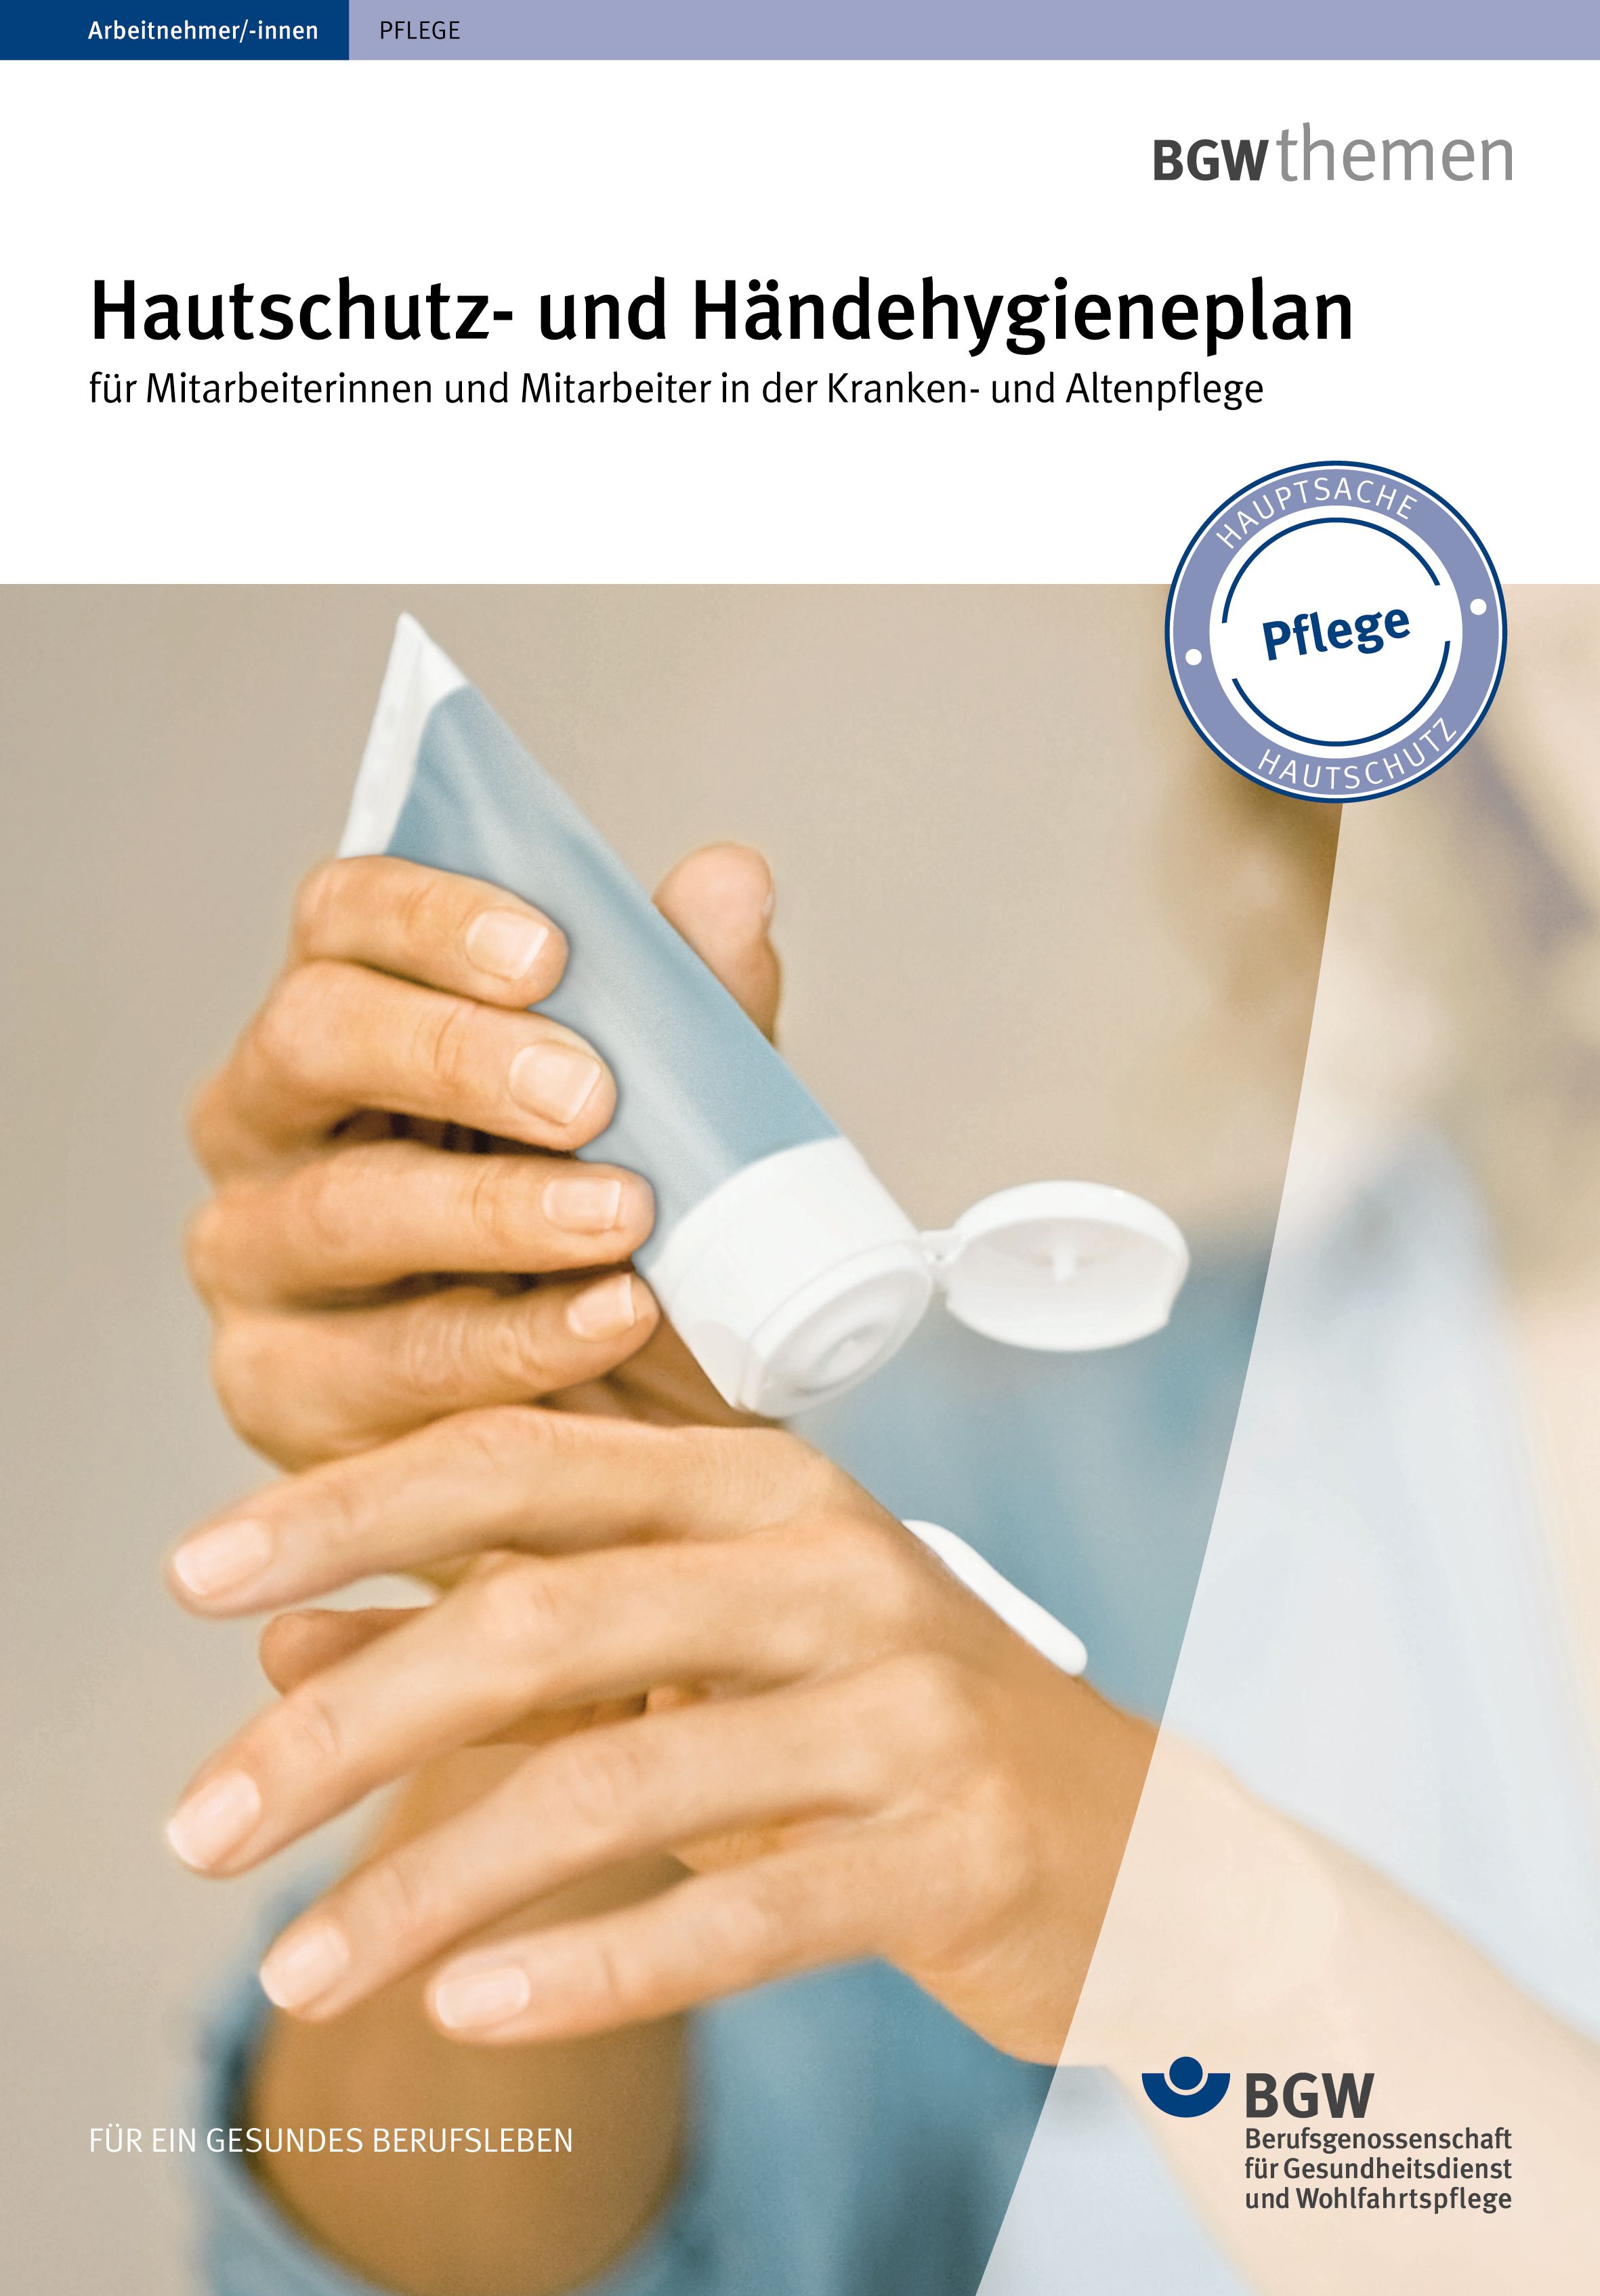 Titelbild: Hautschutz- und Händehygieneplan für Mitarbeiterinnen und Mitarbeiter in Kranken- und Altenpflege